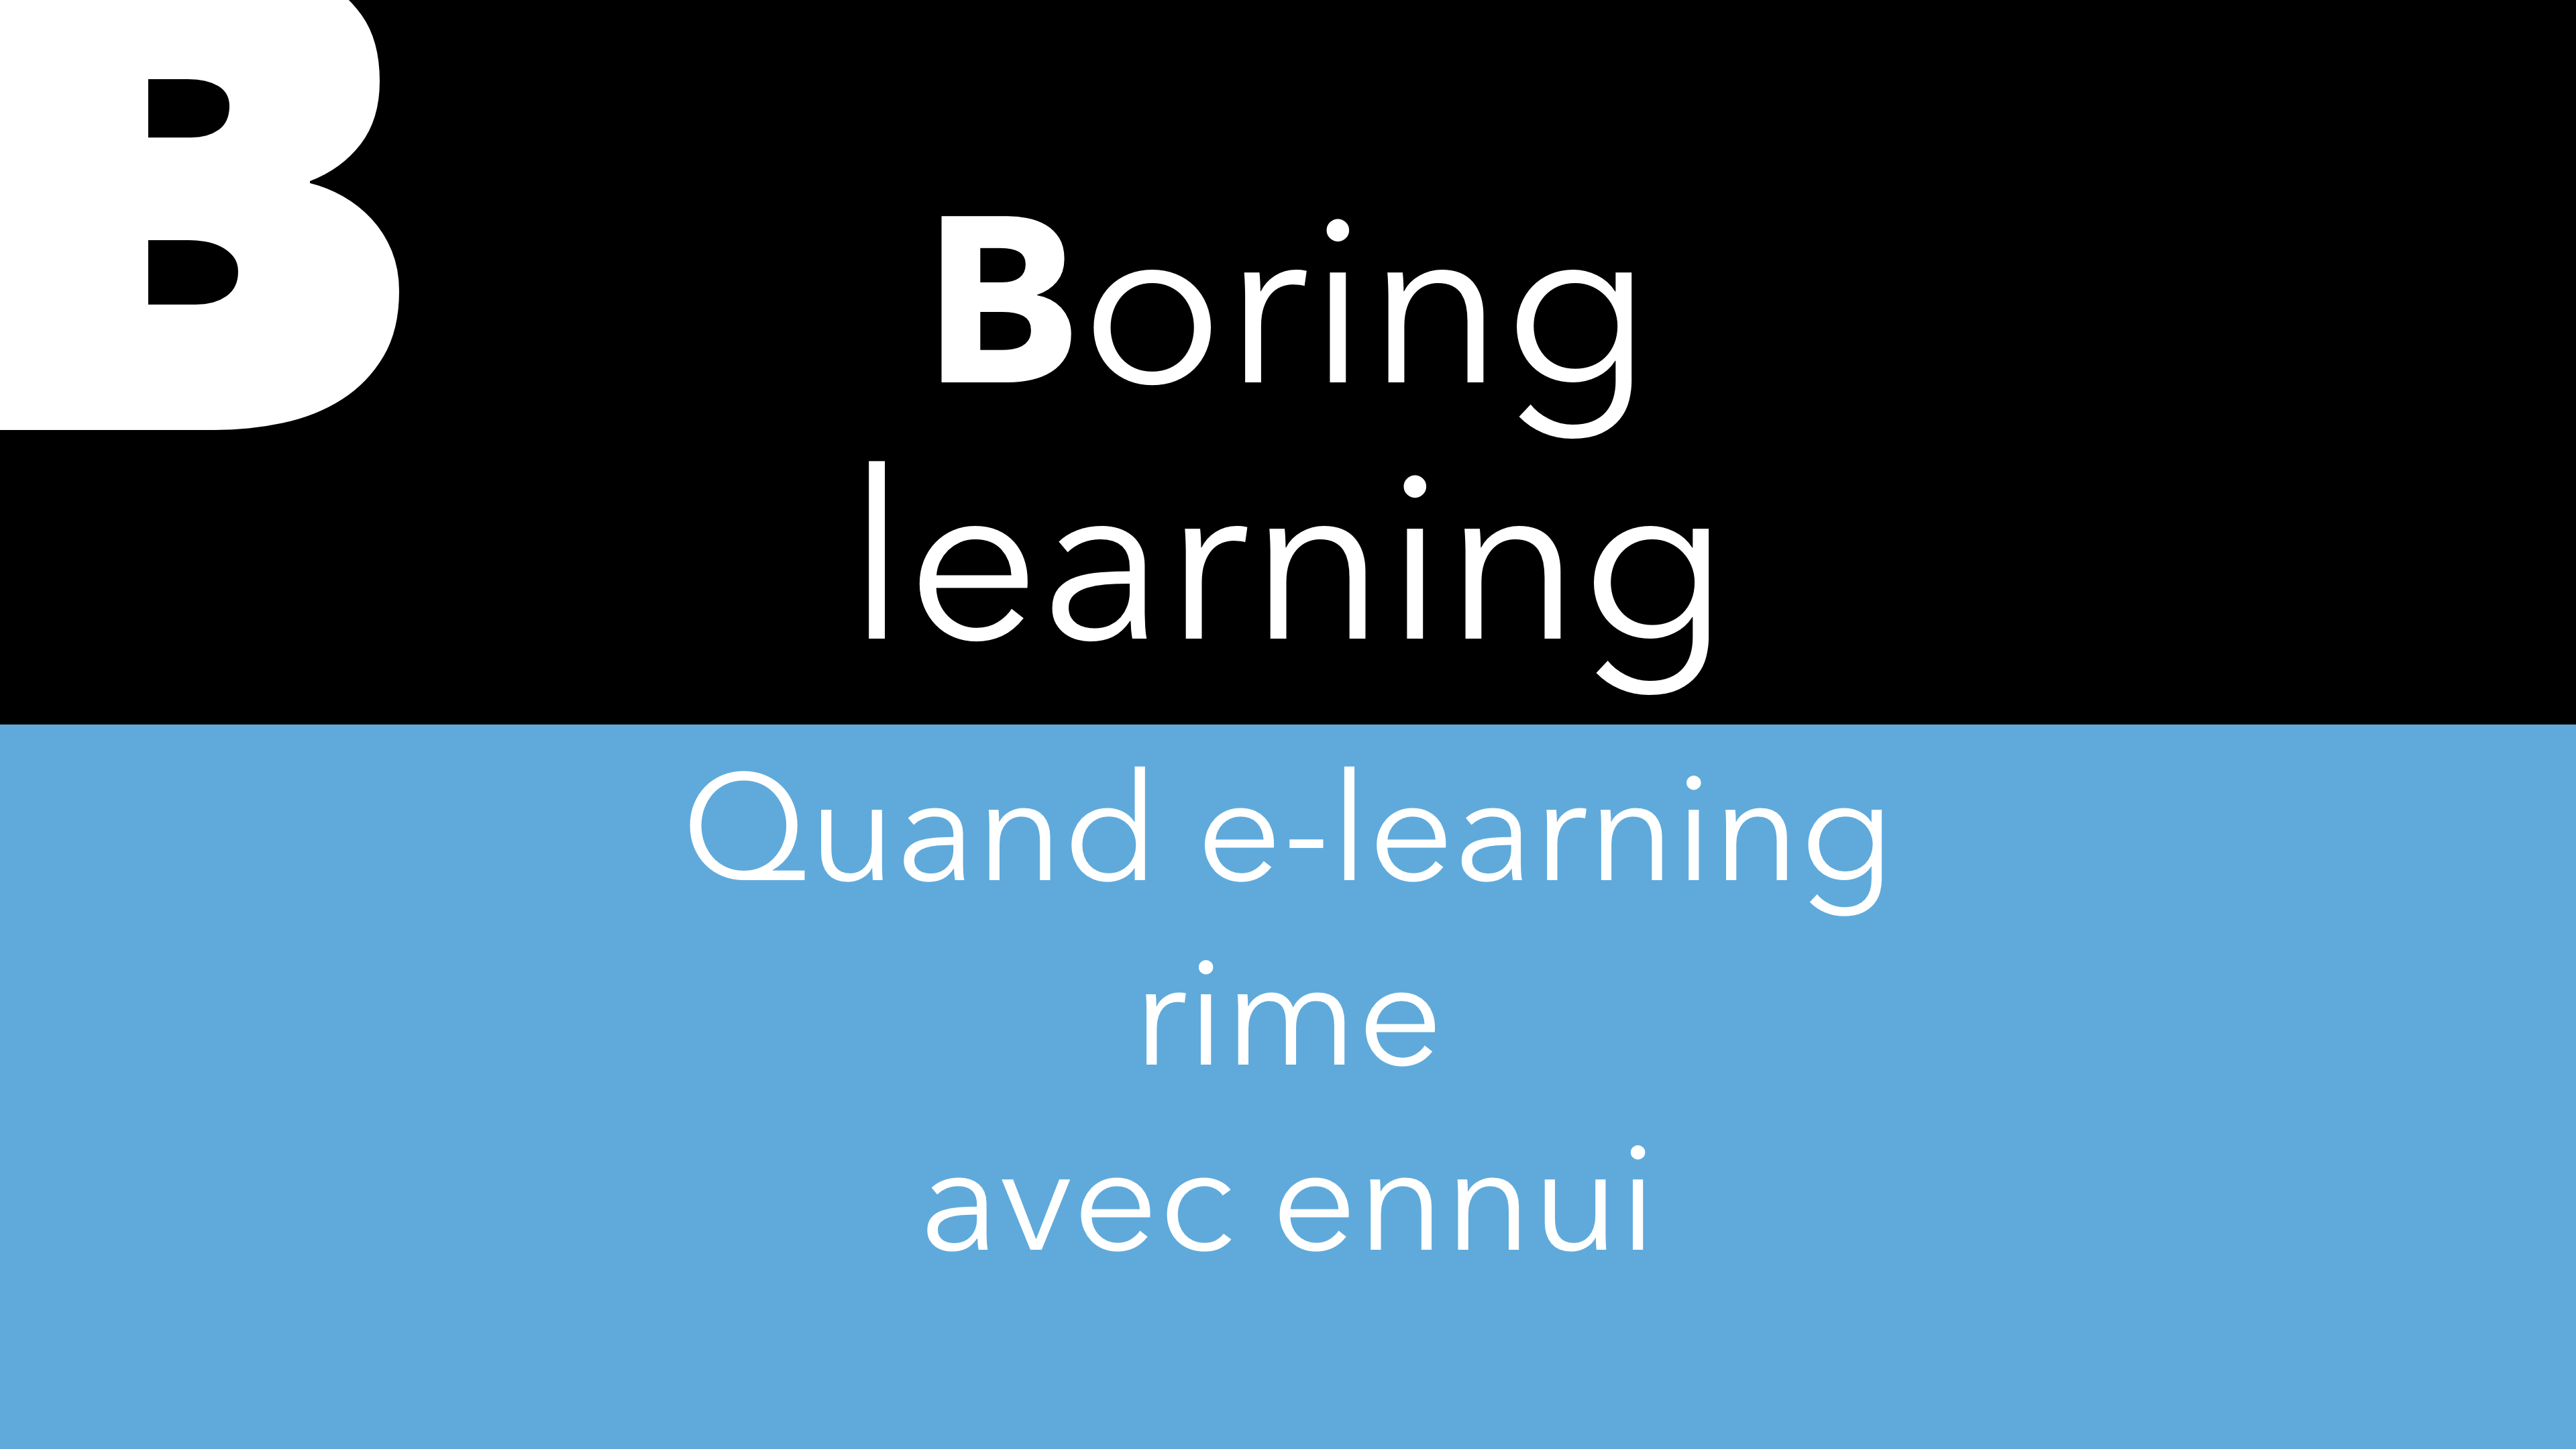 B – Boring Learning